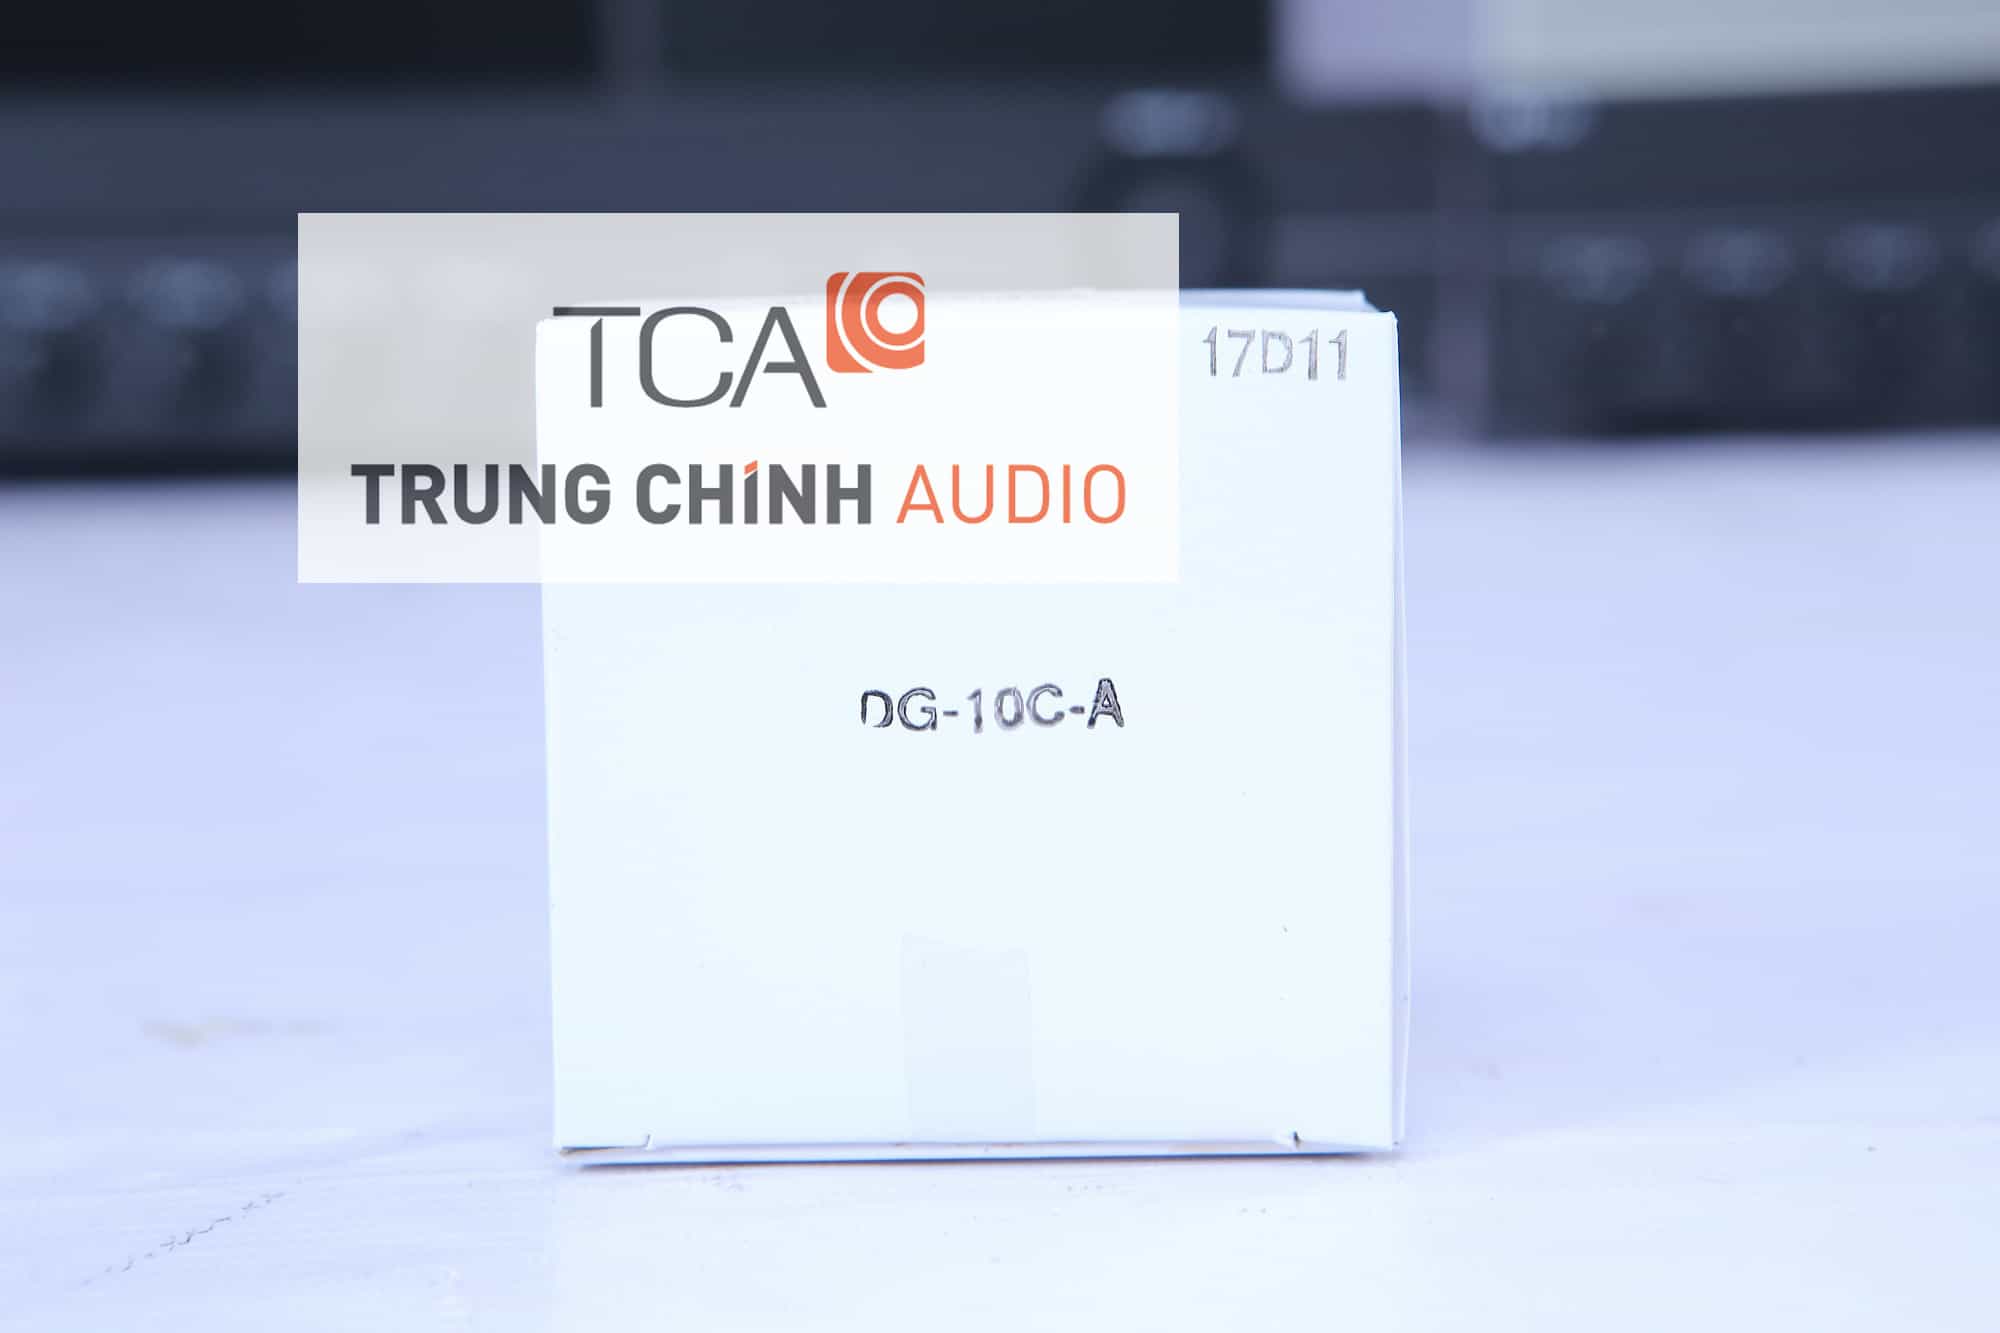 Màng loa TOA DG-10C-A chính hãng của TOA phân phối tại Trung Chính Audio